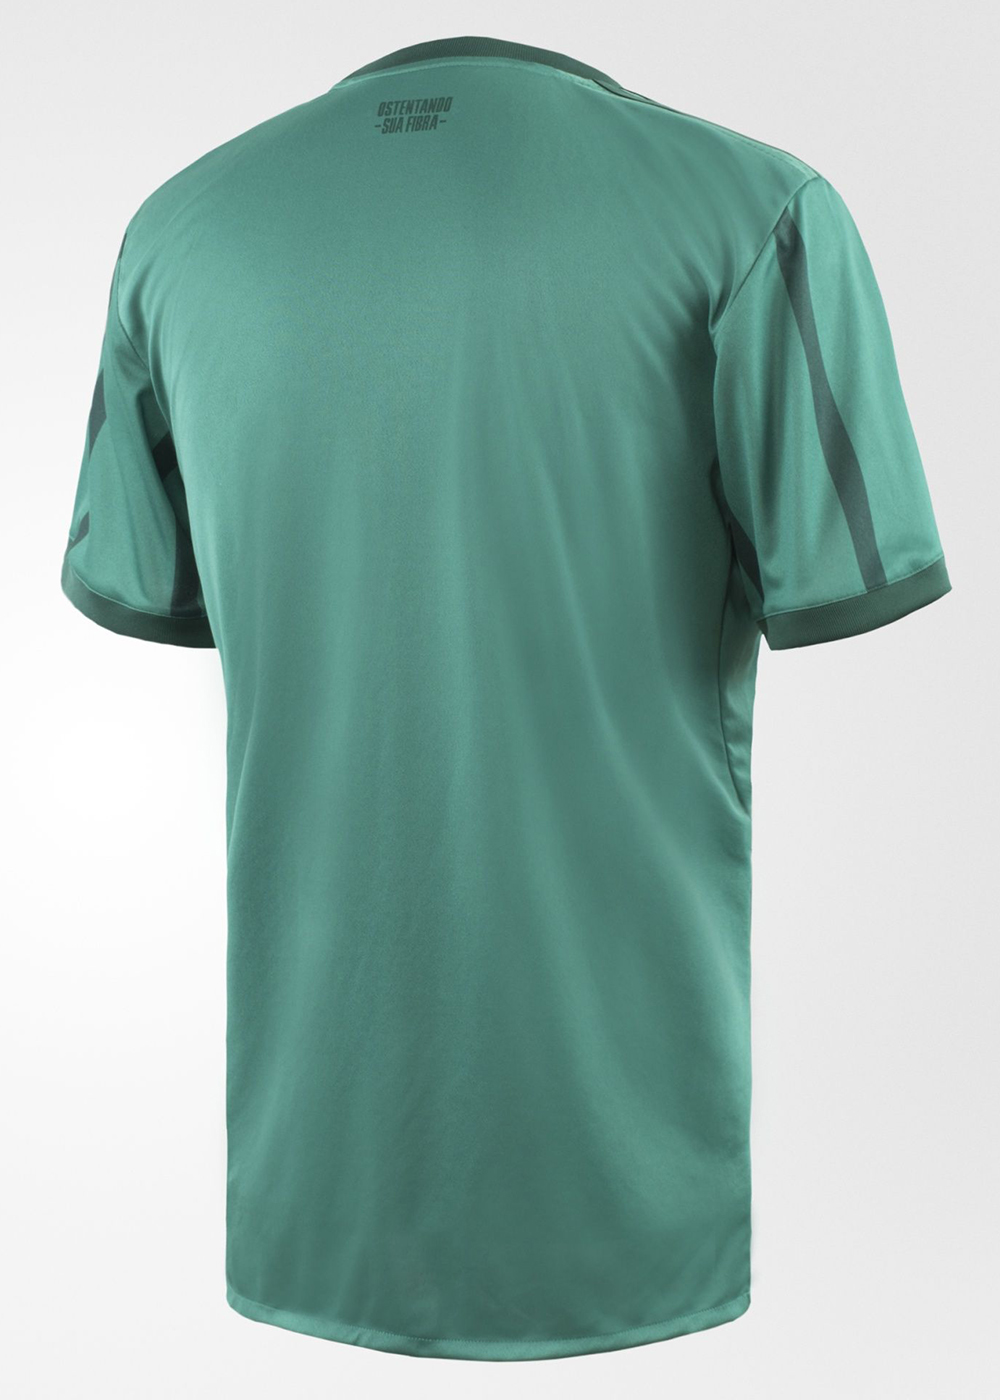 Camisa adidas do Palmeiras 2017